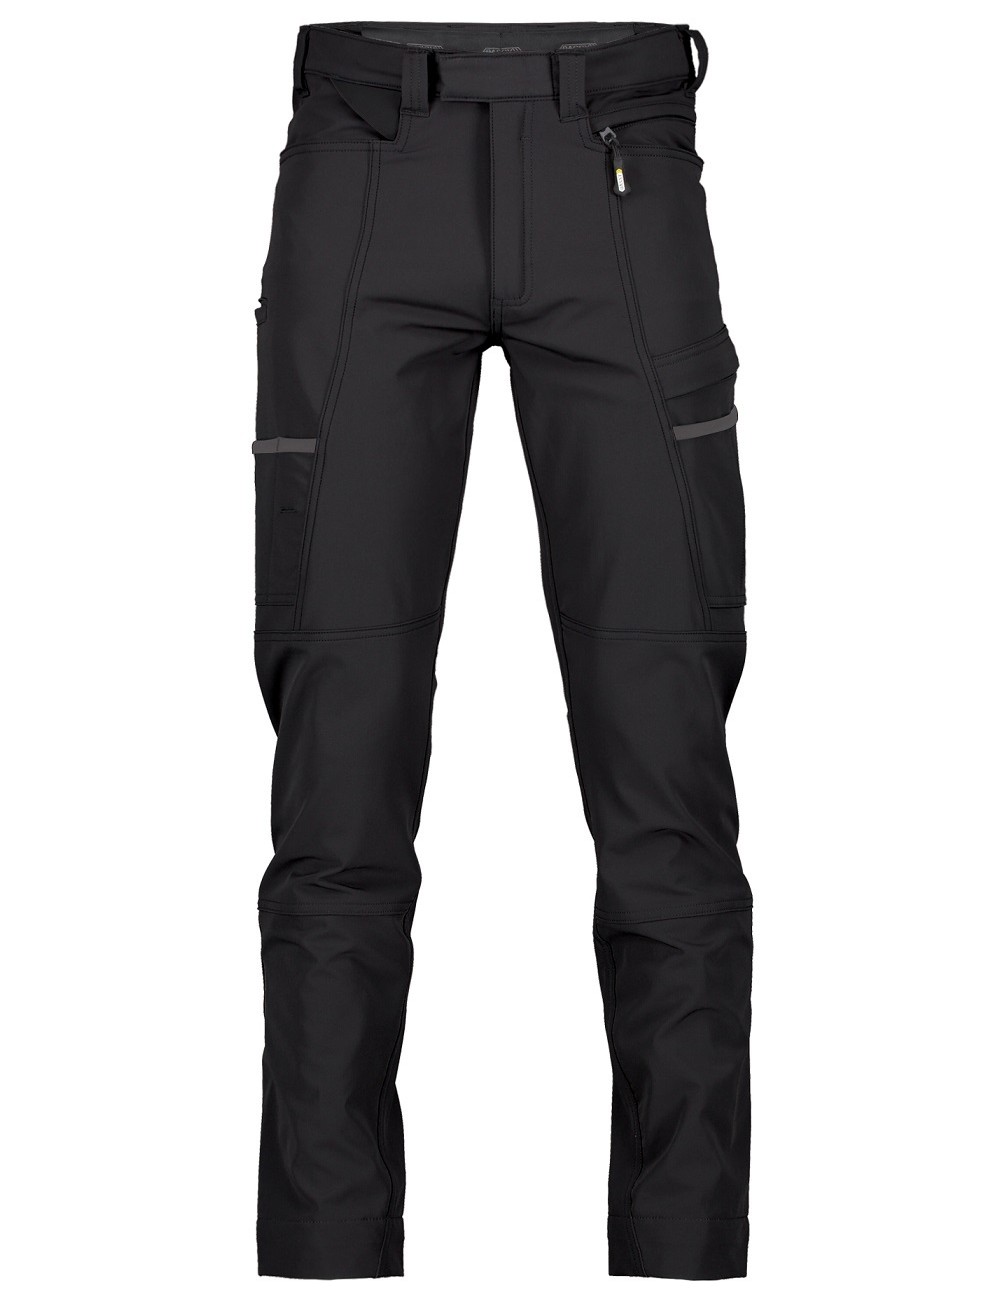 Dassy Storax stretch work trousers | BalticWorkwear.com